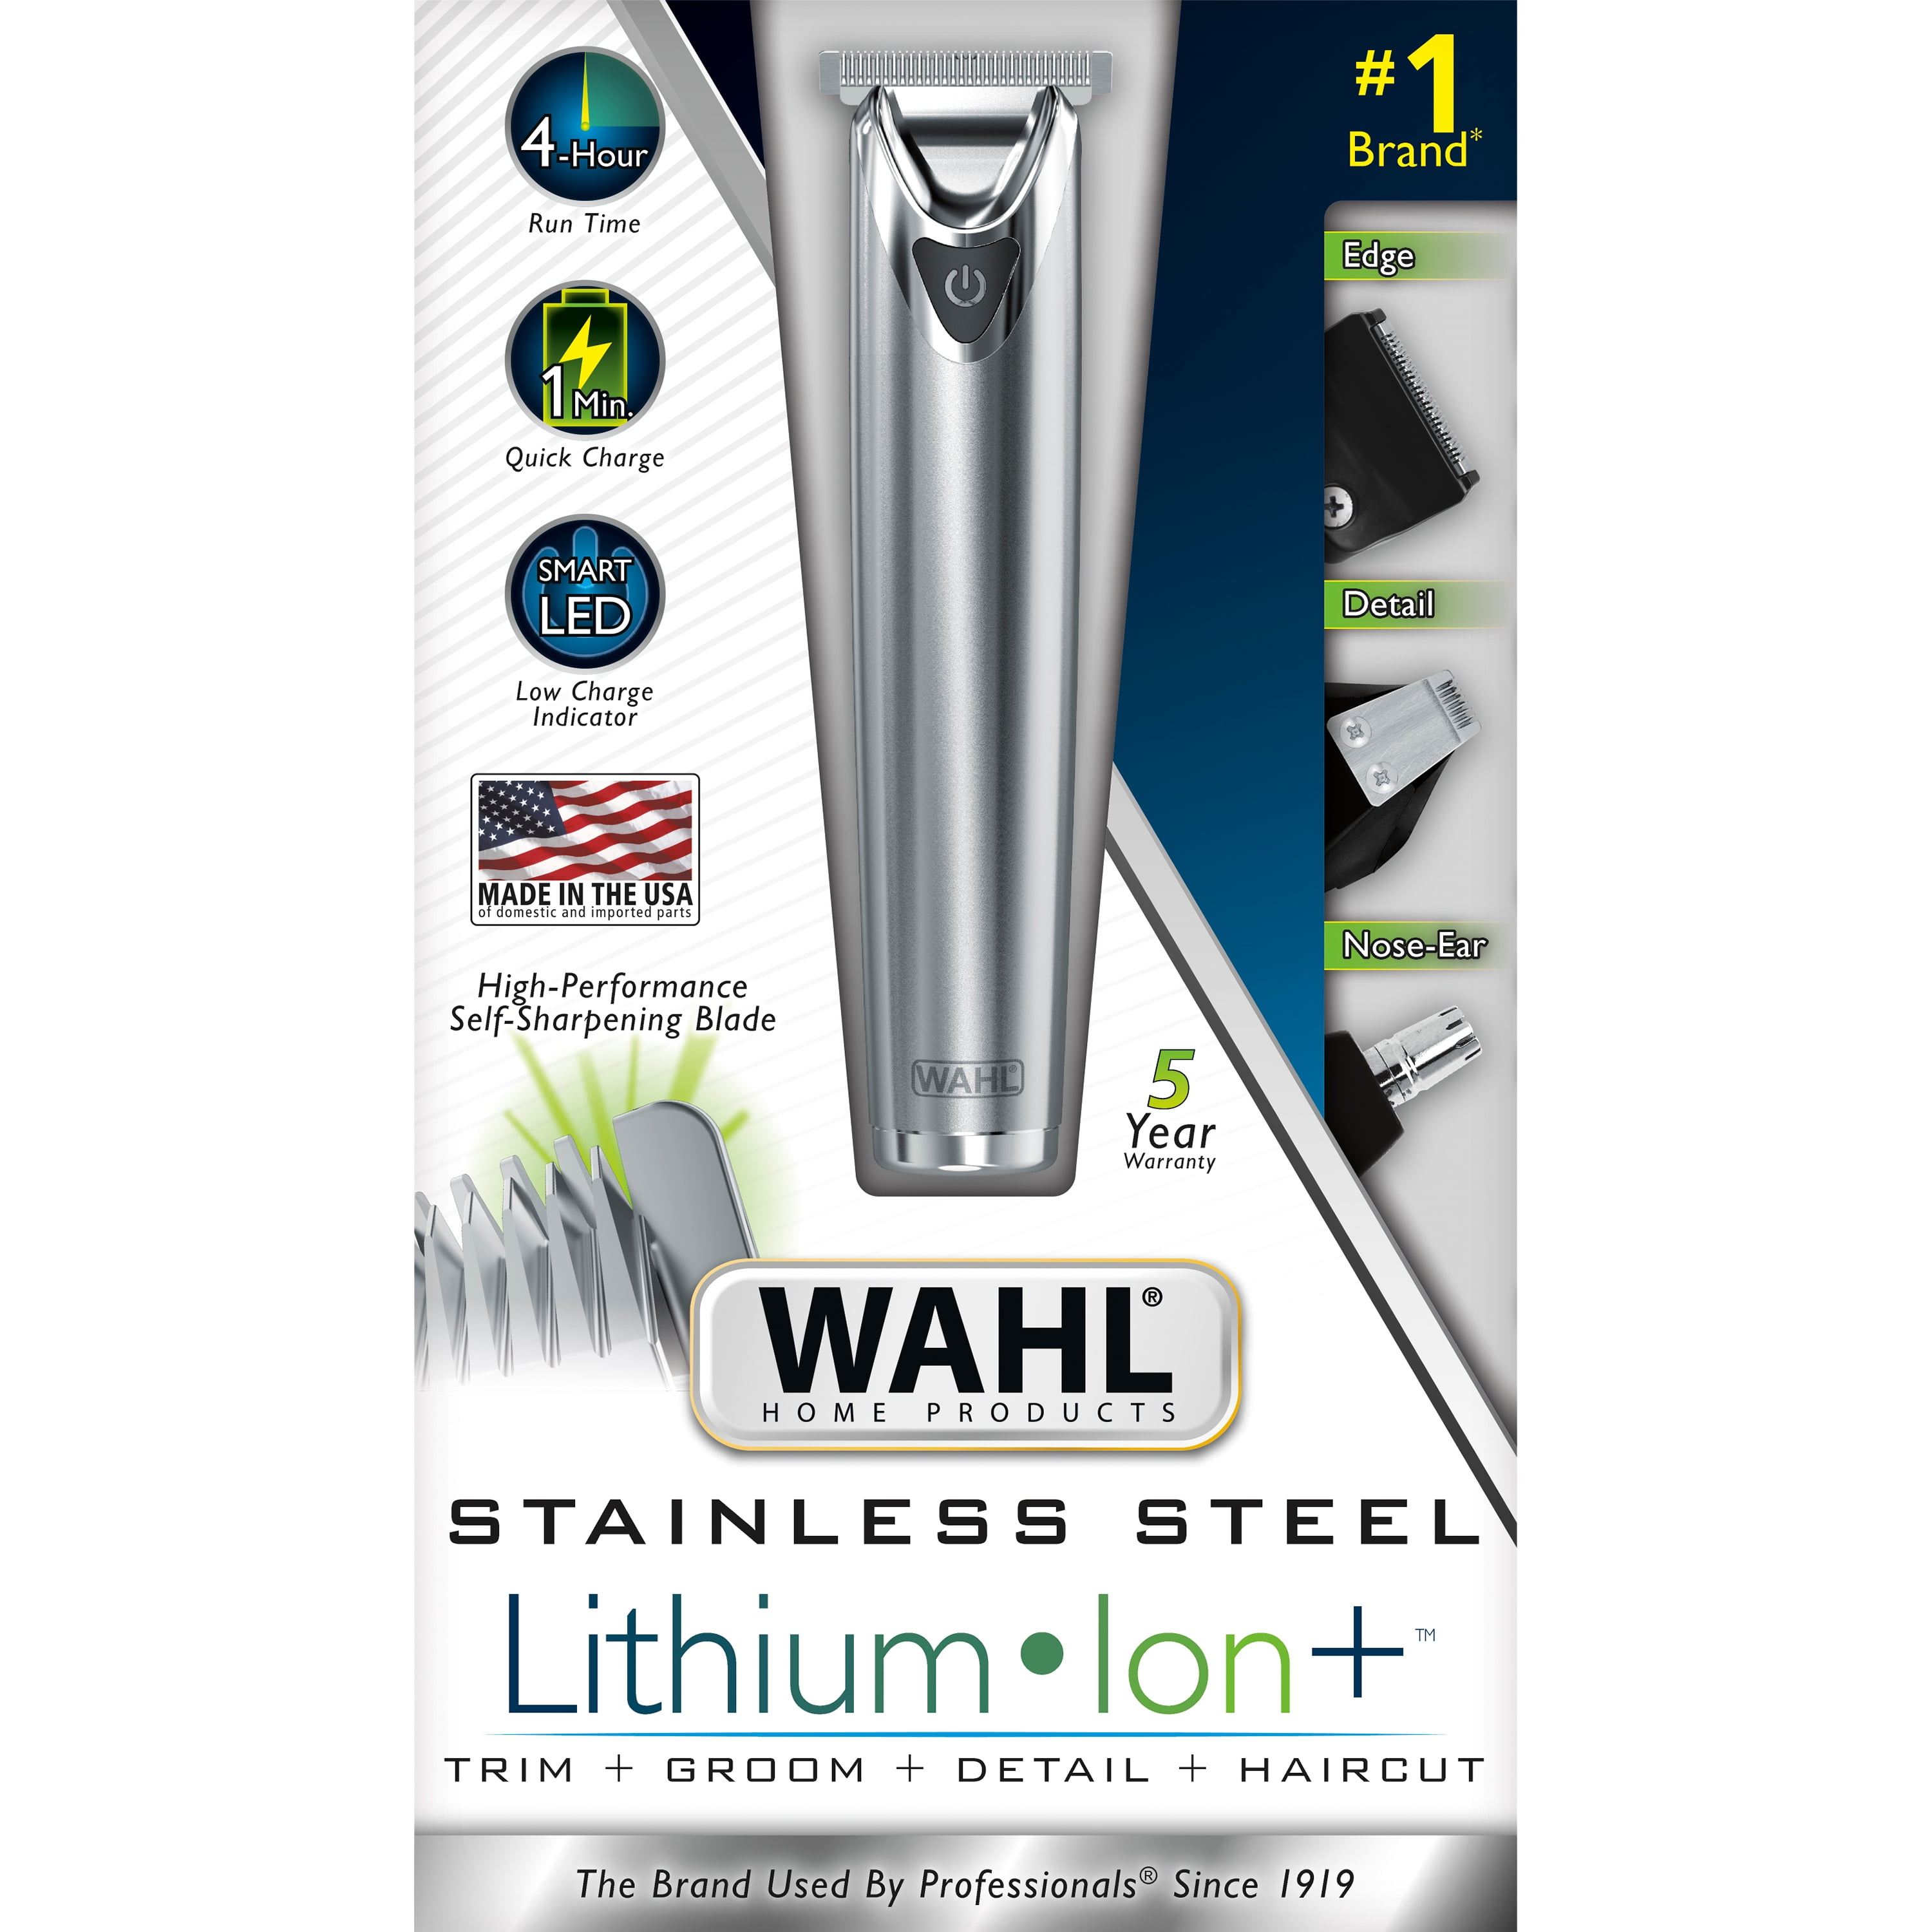 wahl lithium ion walmart